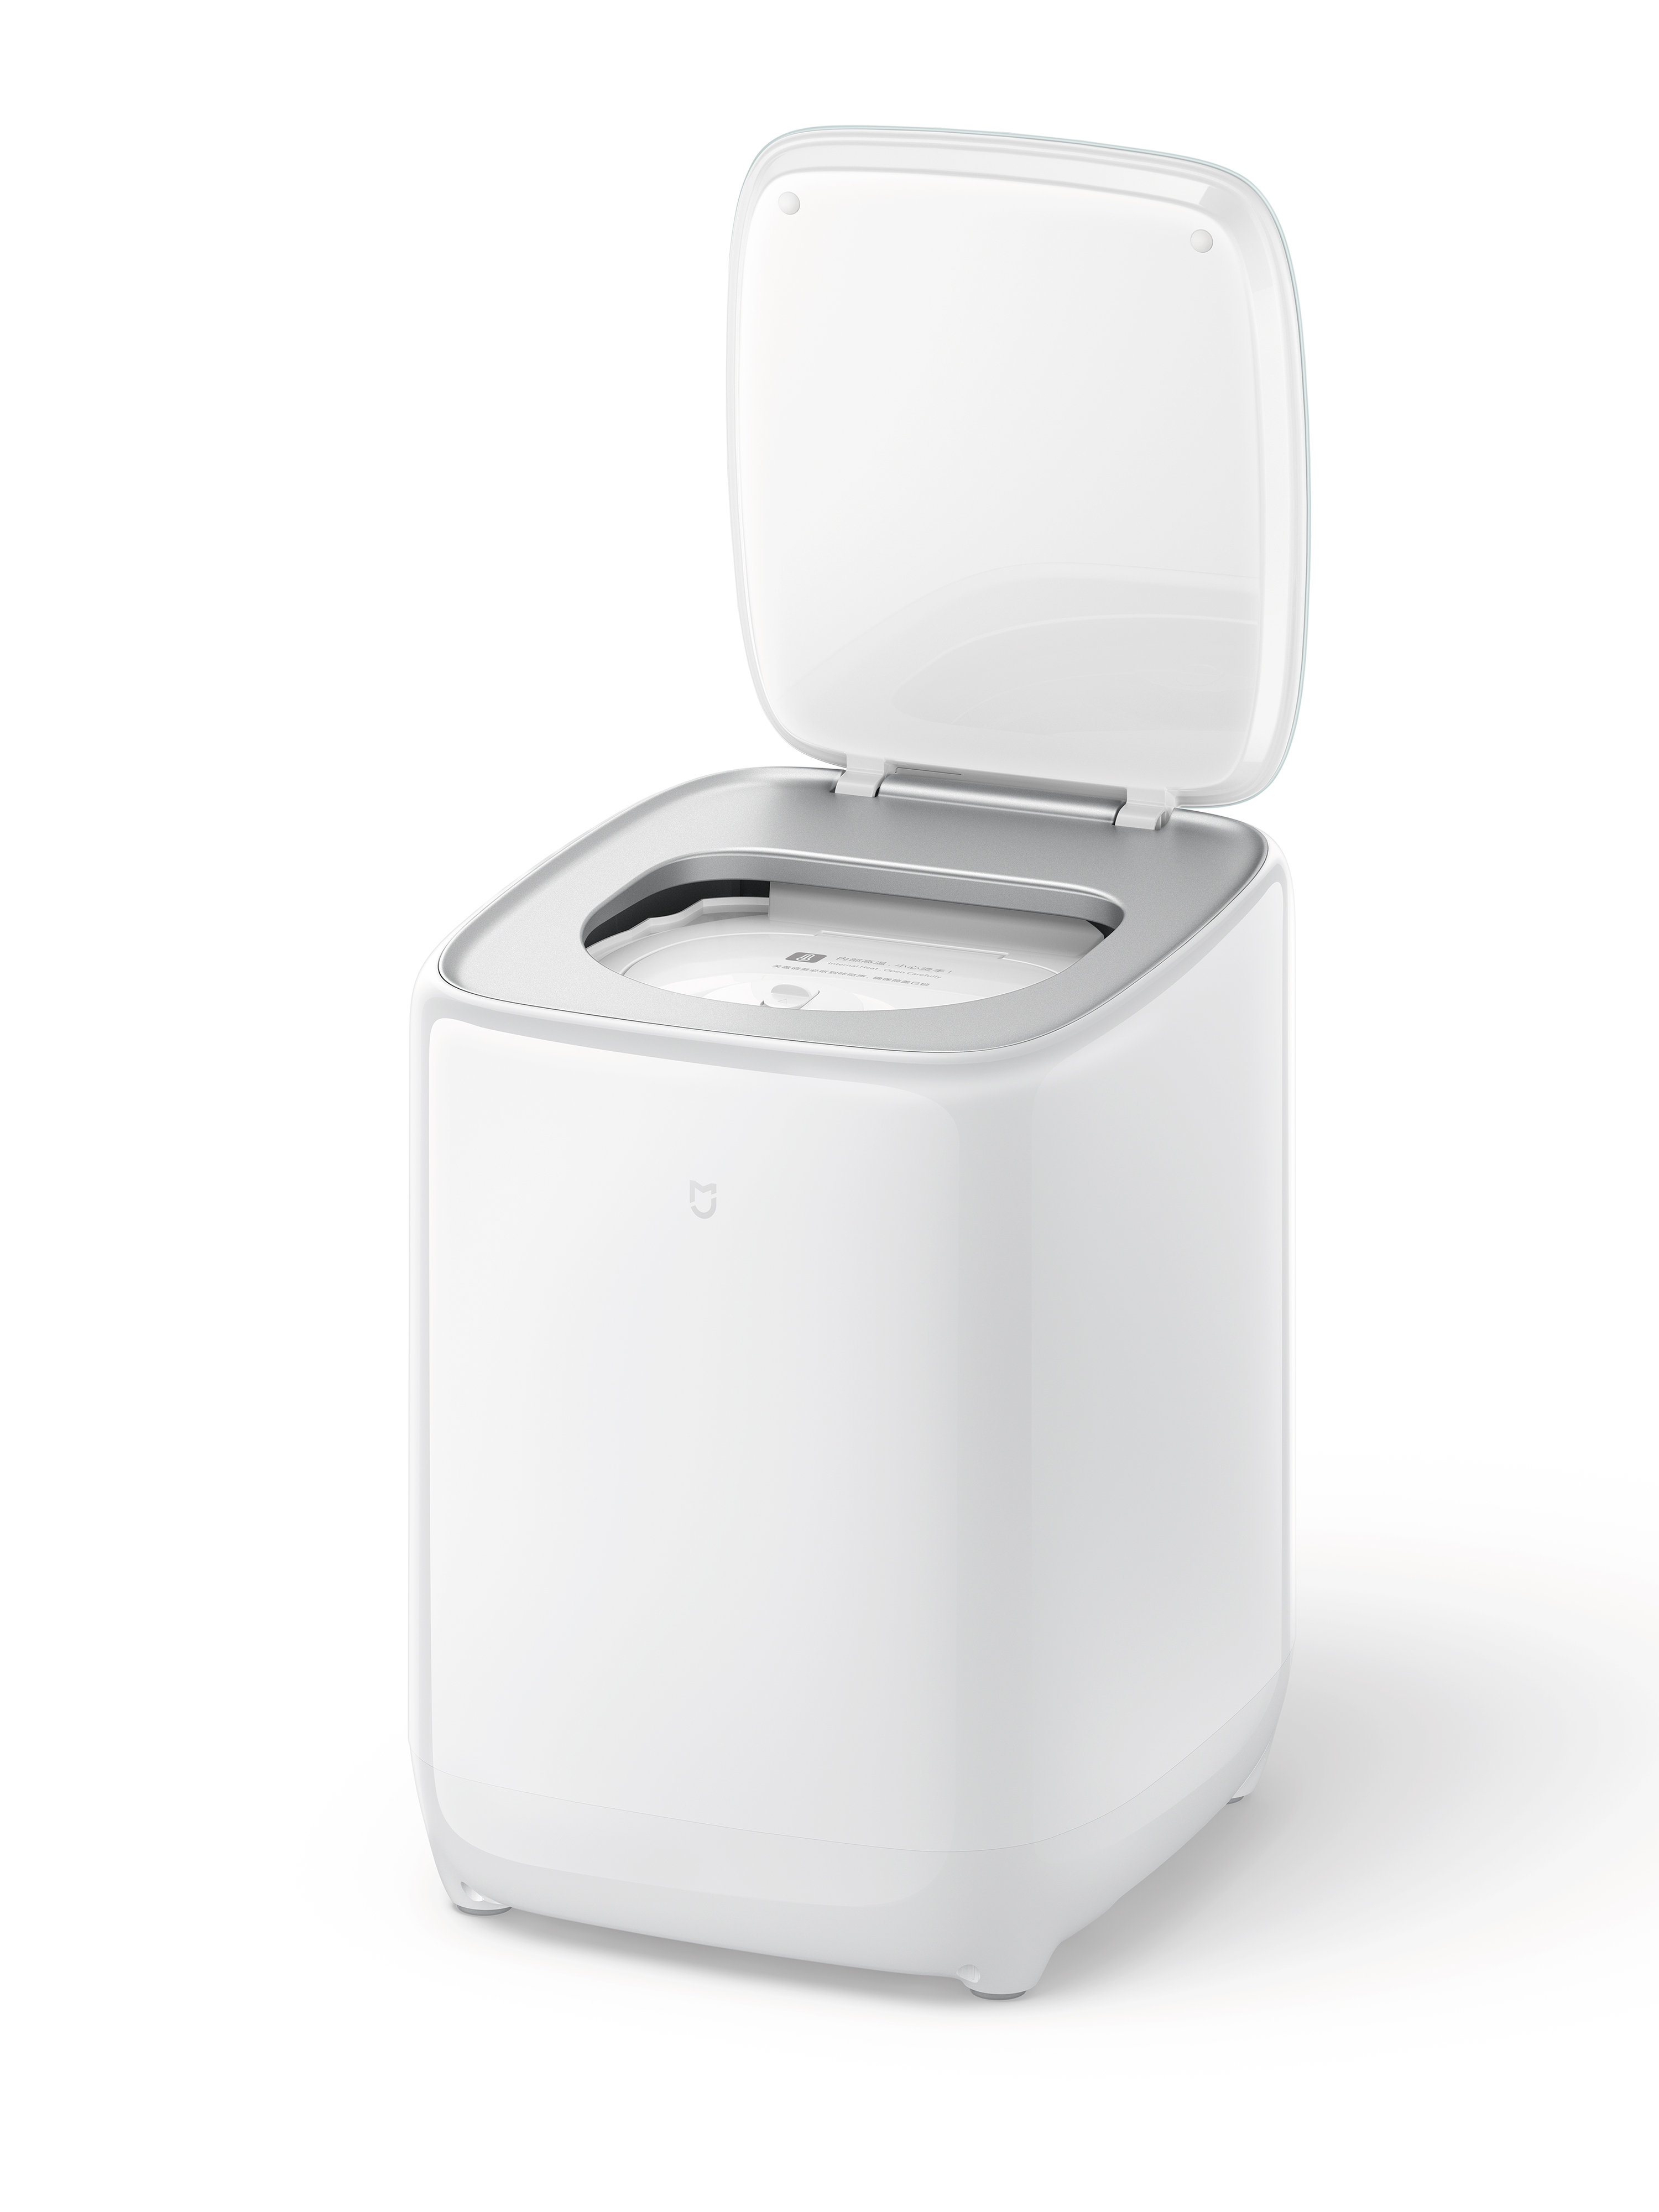 iF Design - Xiaomi Underwear Washer Dryer